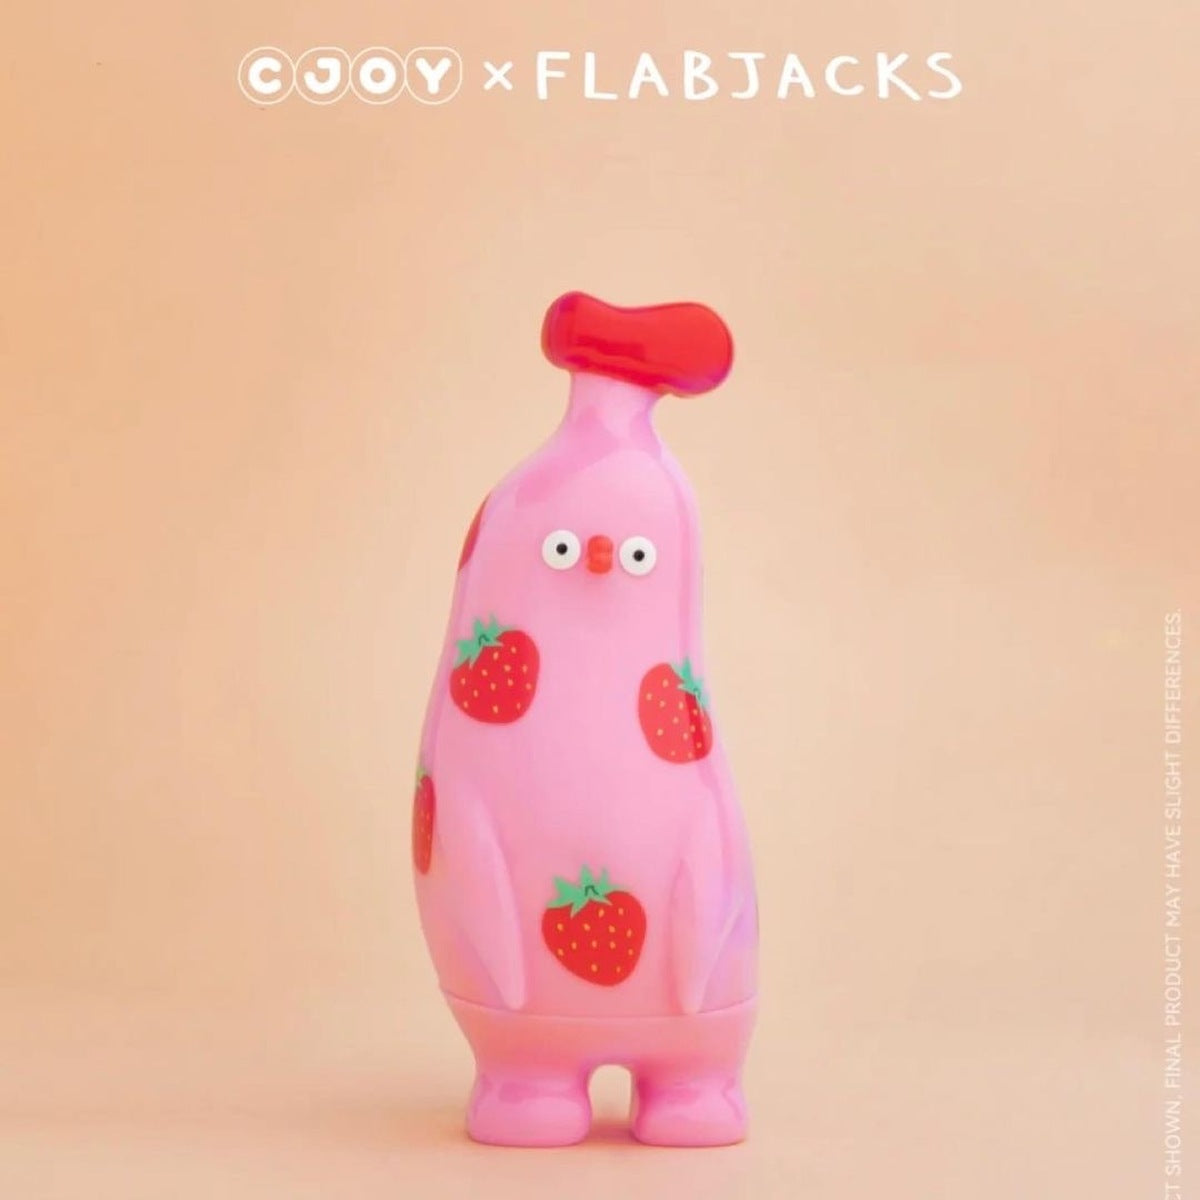 Banana Boo Warm Fuzzy Blind Box Series by CJOY x Flabjacks